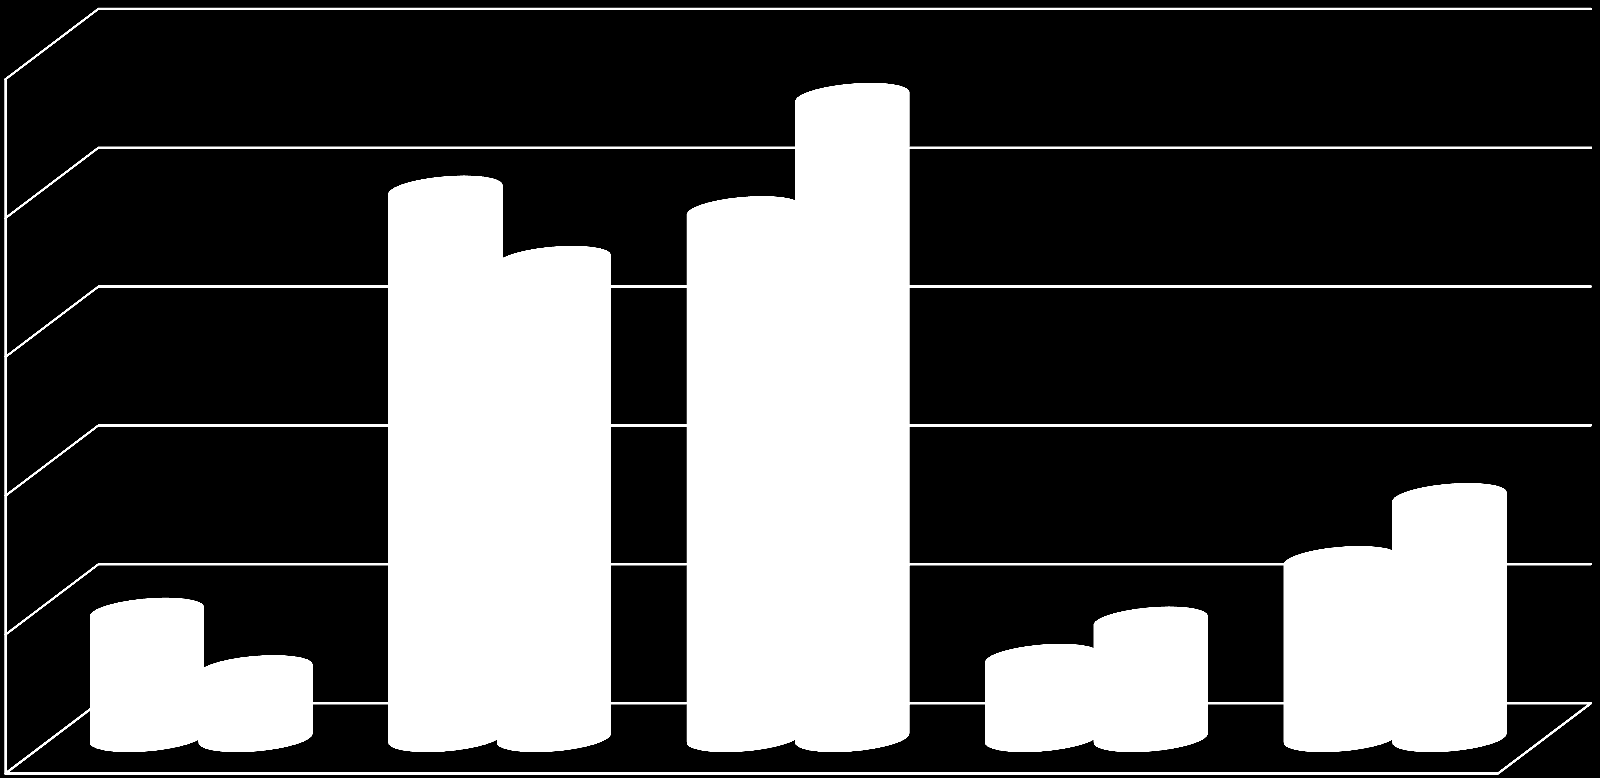 A bevontak életkor szerinti megoszlása 2015.